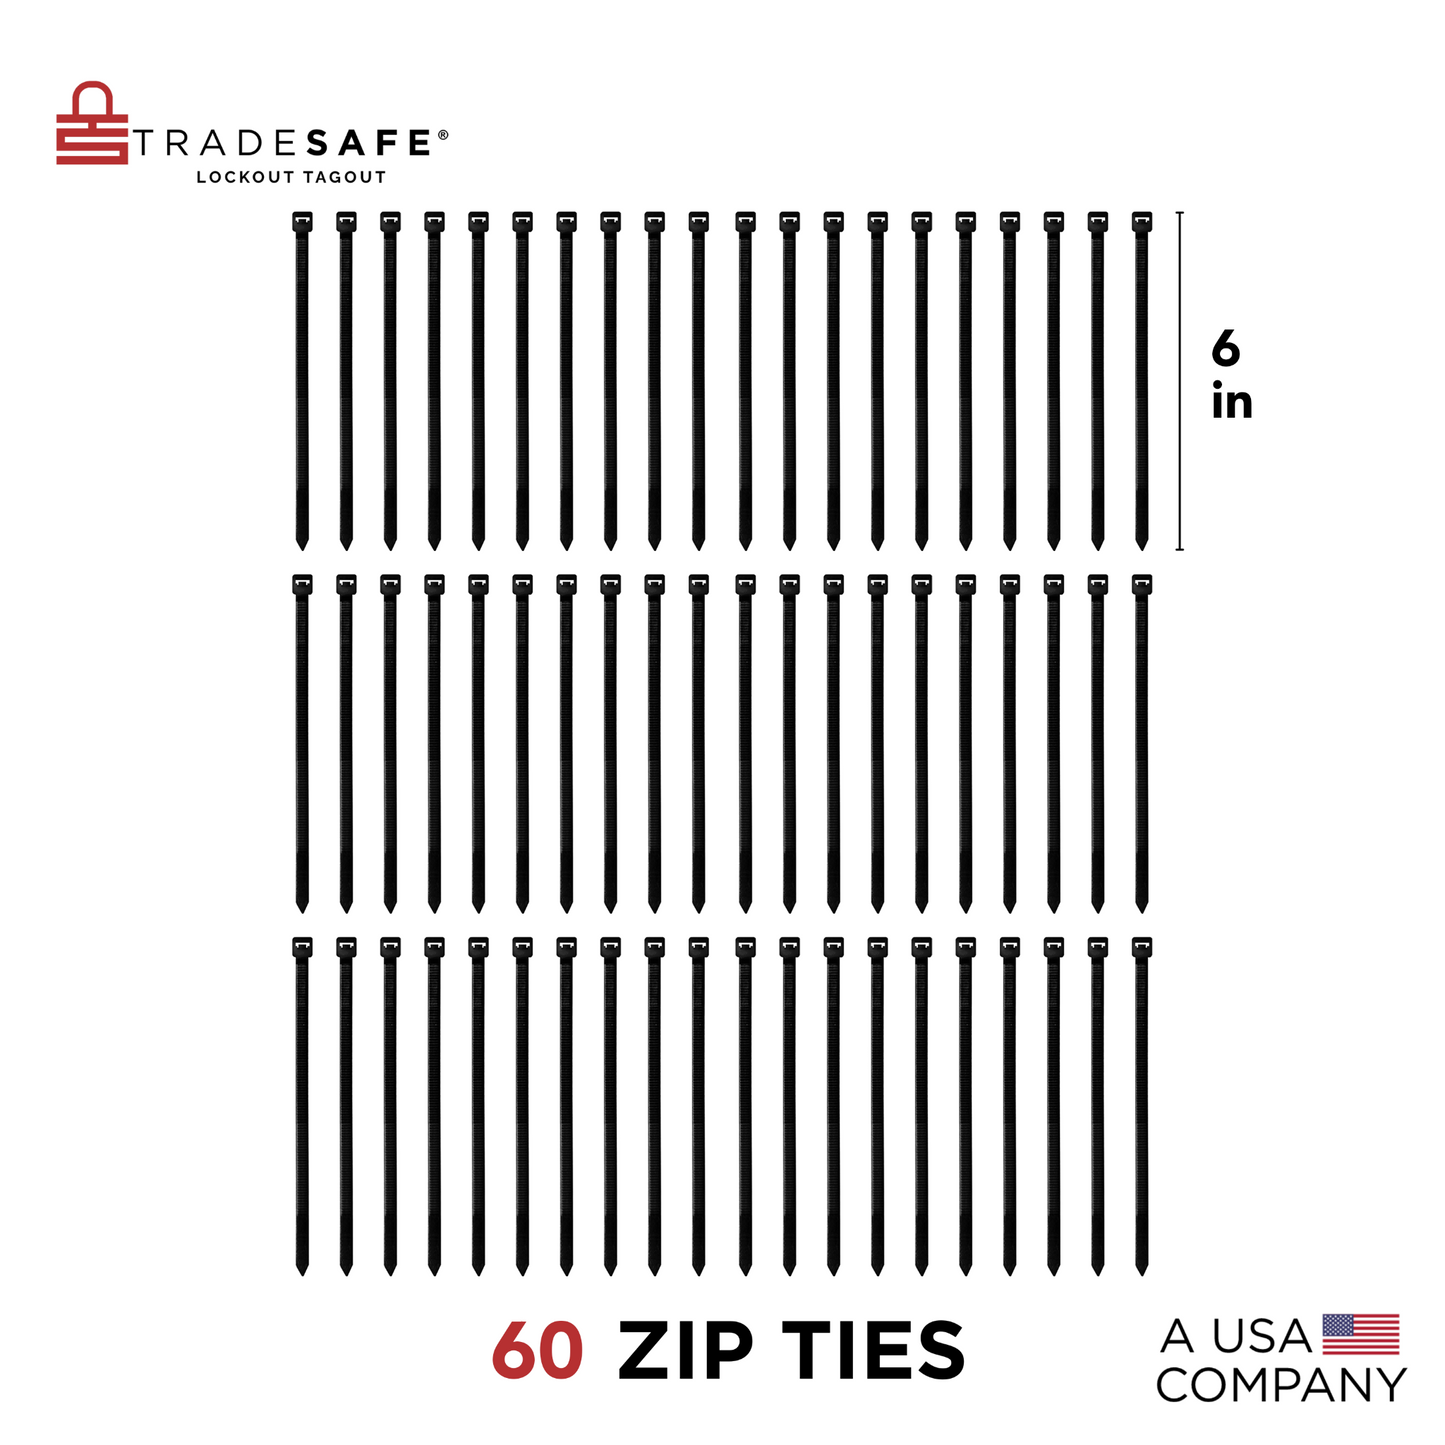 three rows of 6-inch zip ties, each with 20 zip ties aligned